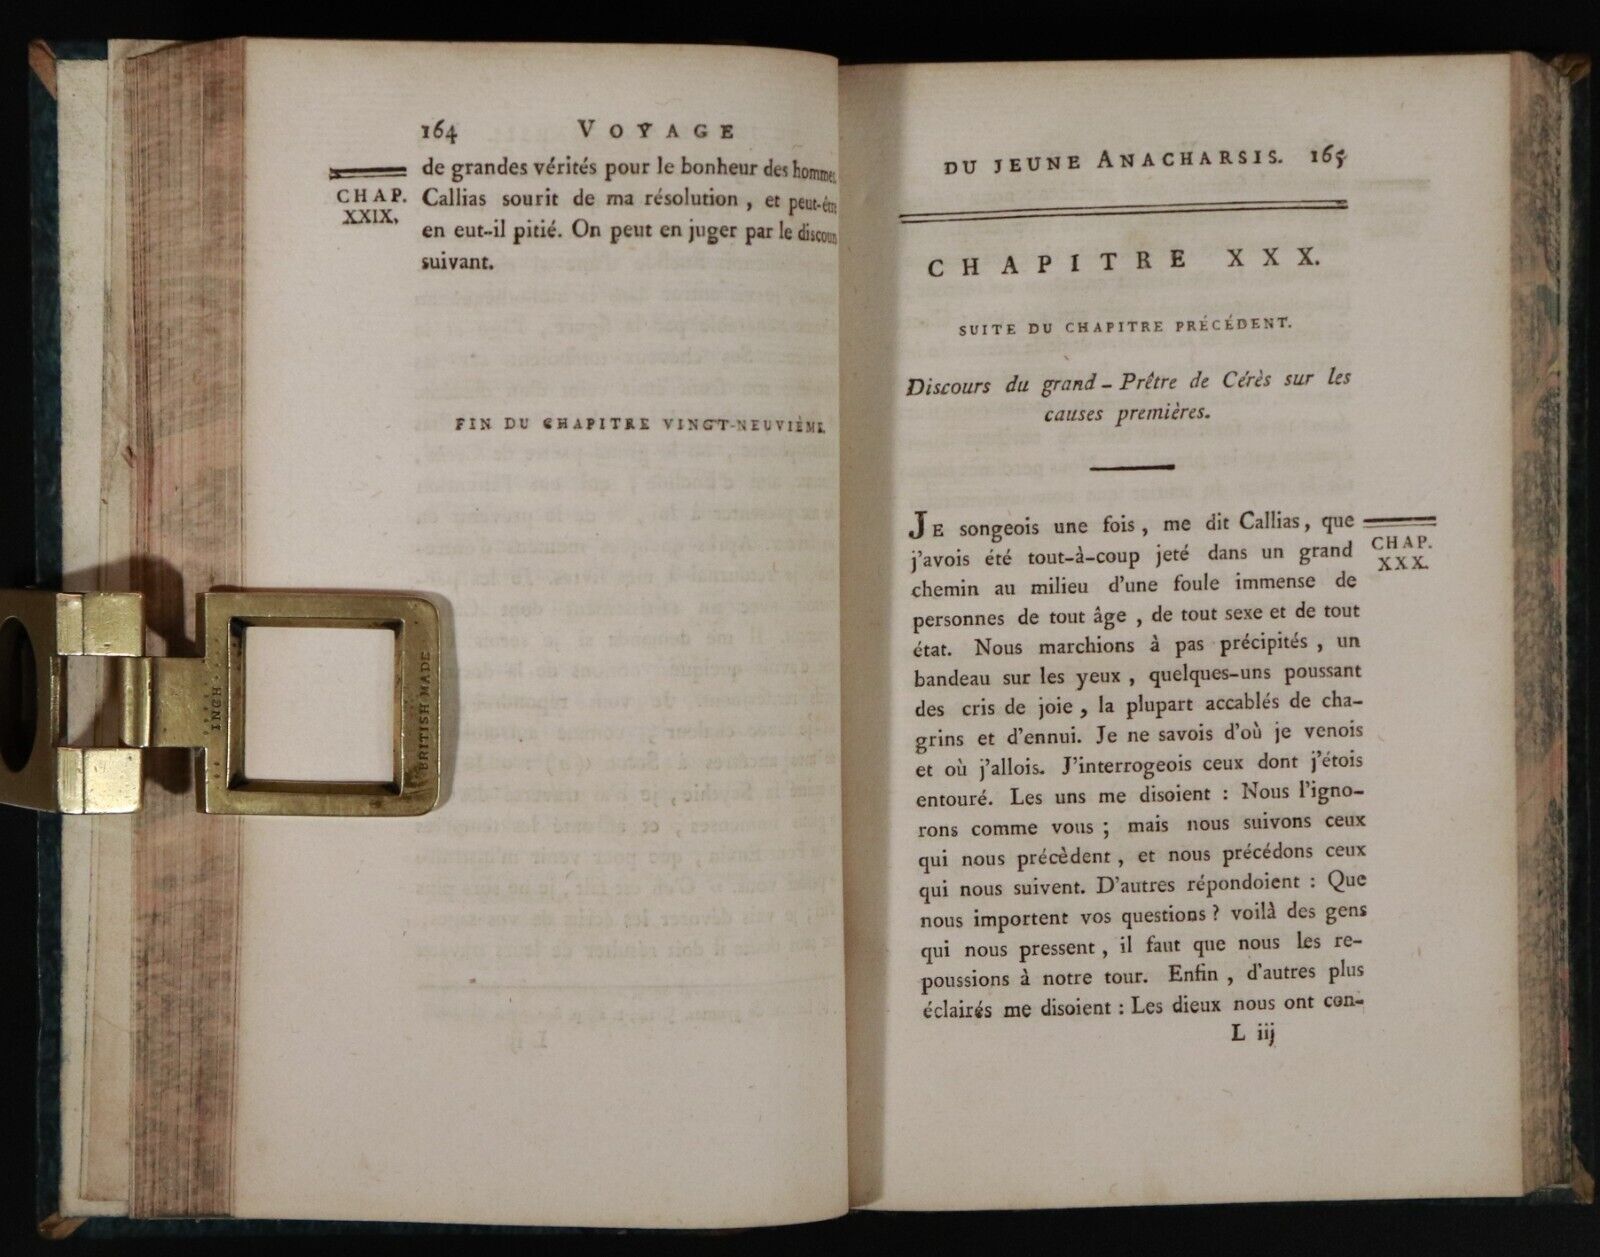 1790 6vol Voyage De Jeune Anacharsis En Grece Antiquarian History Books